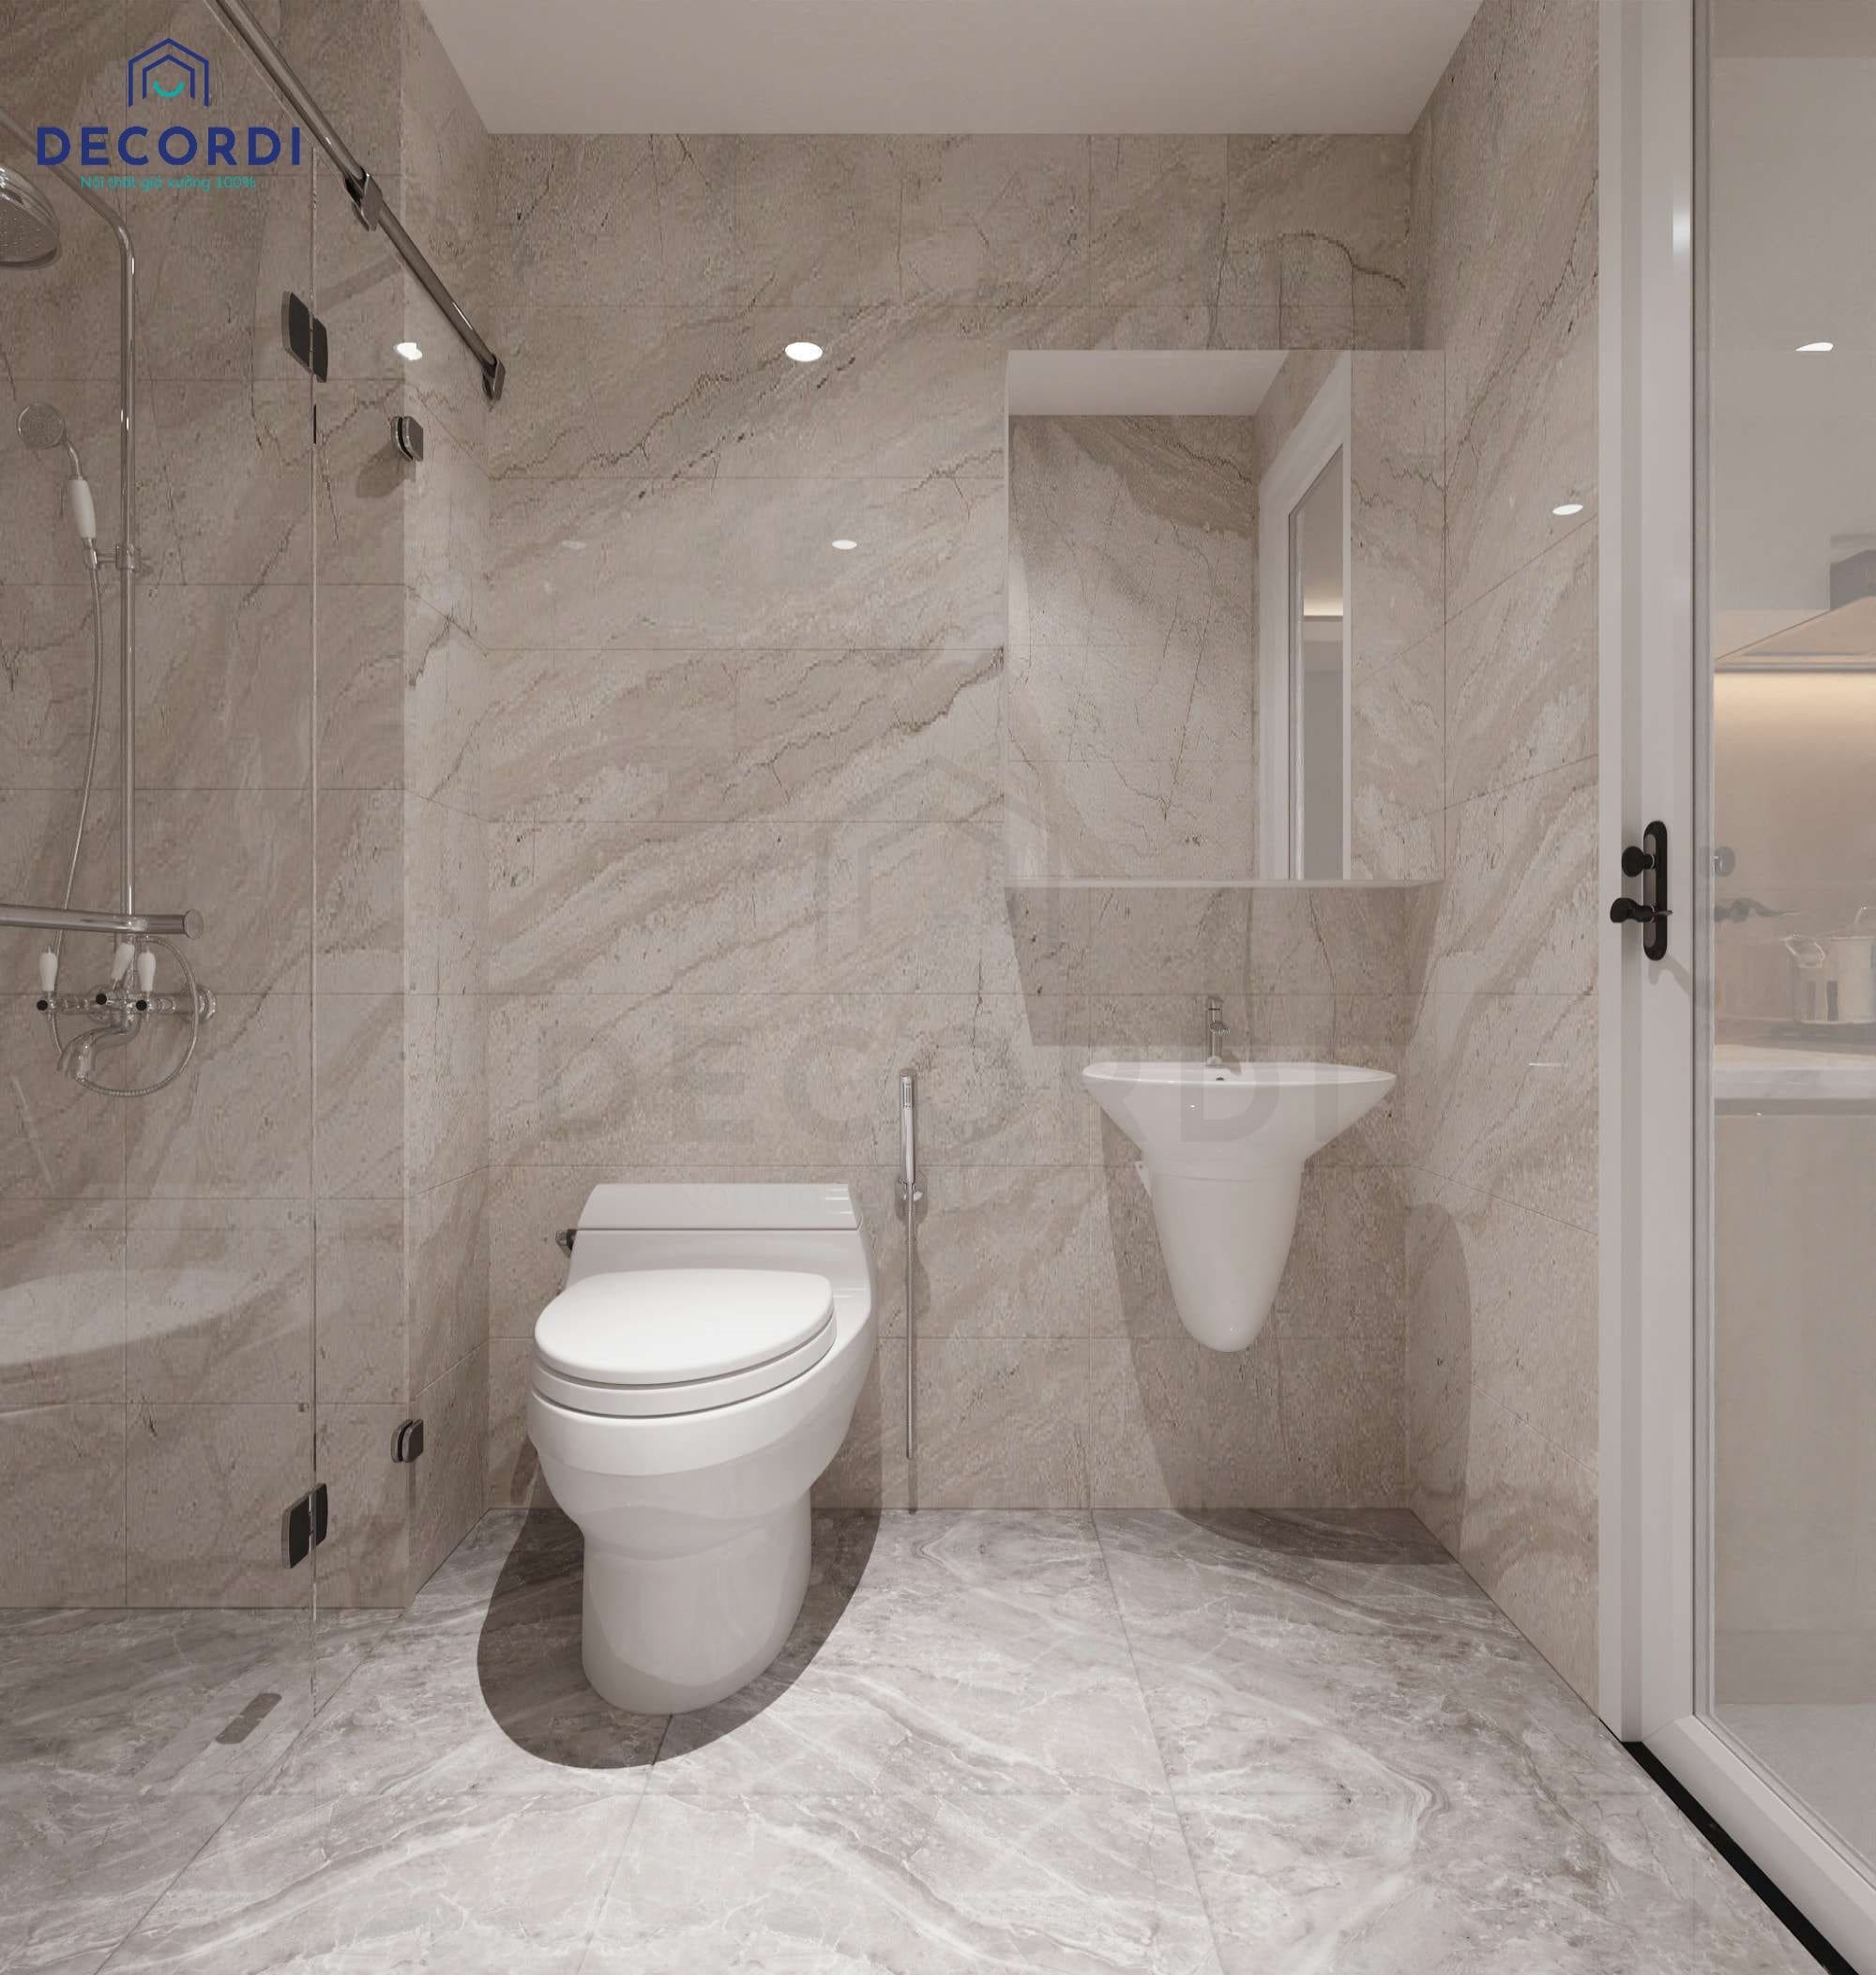 Thiết kế phòng vệ sinh ốp gạch toàn bộ, sử dụng nội thất sứ trắng hiện đại